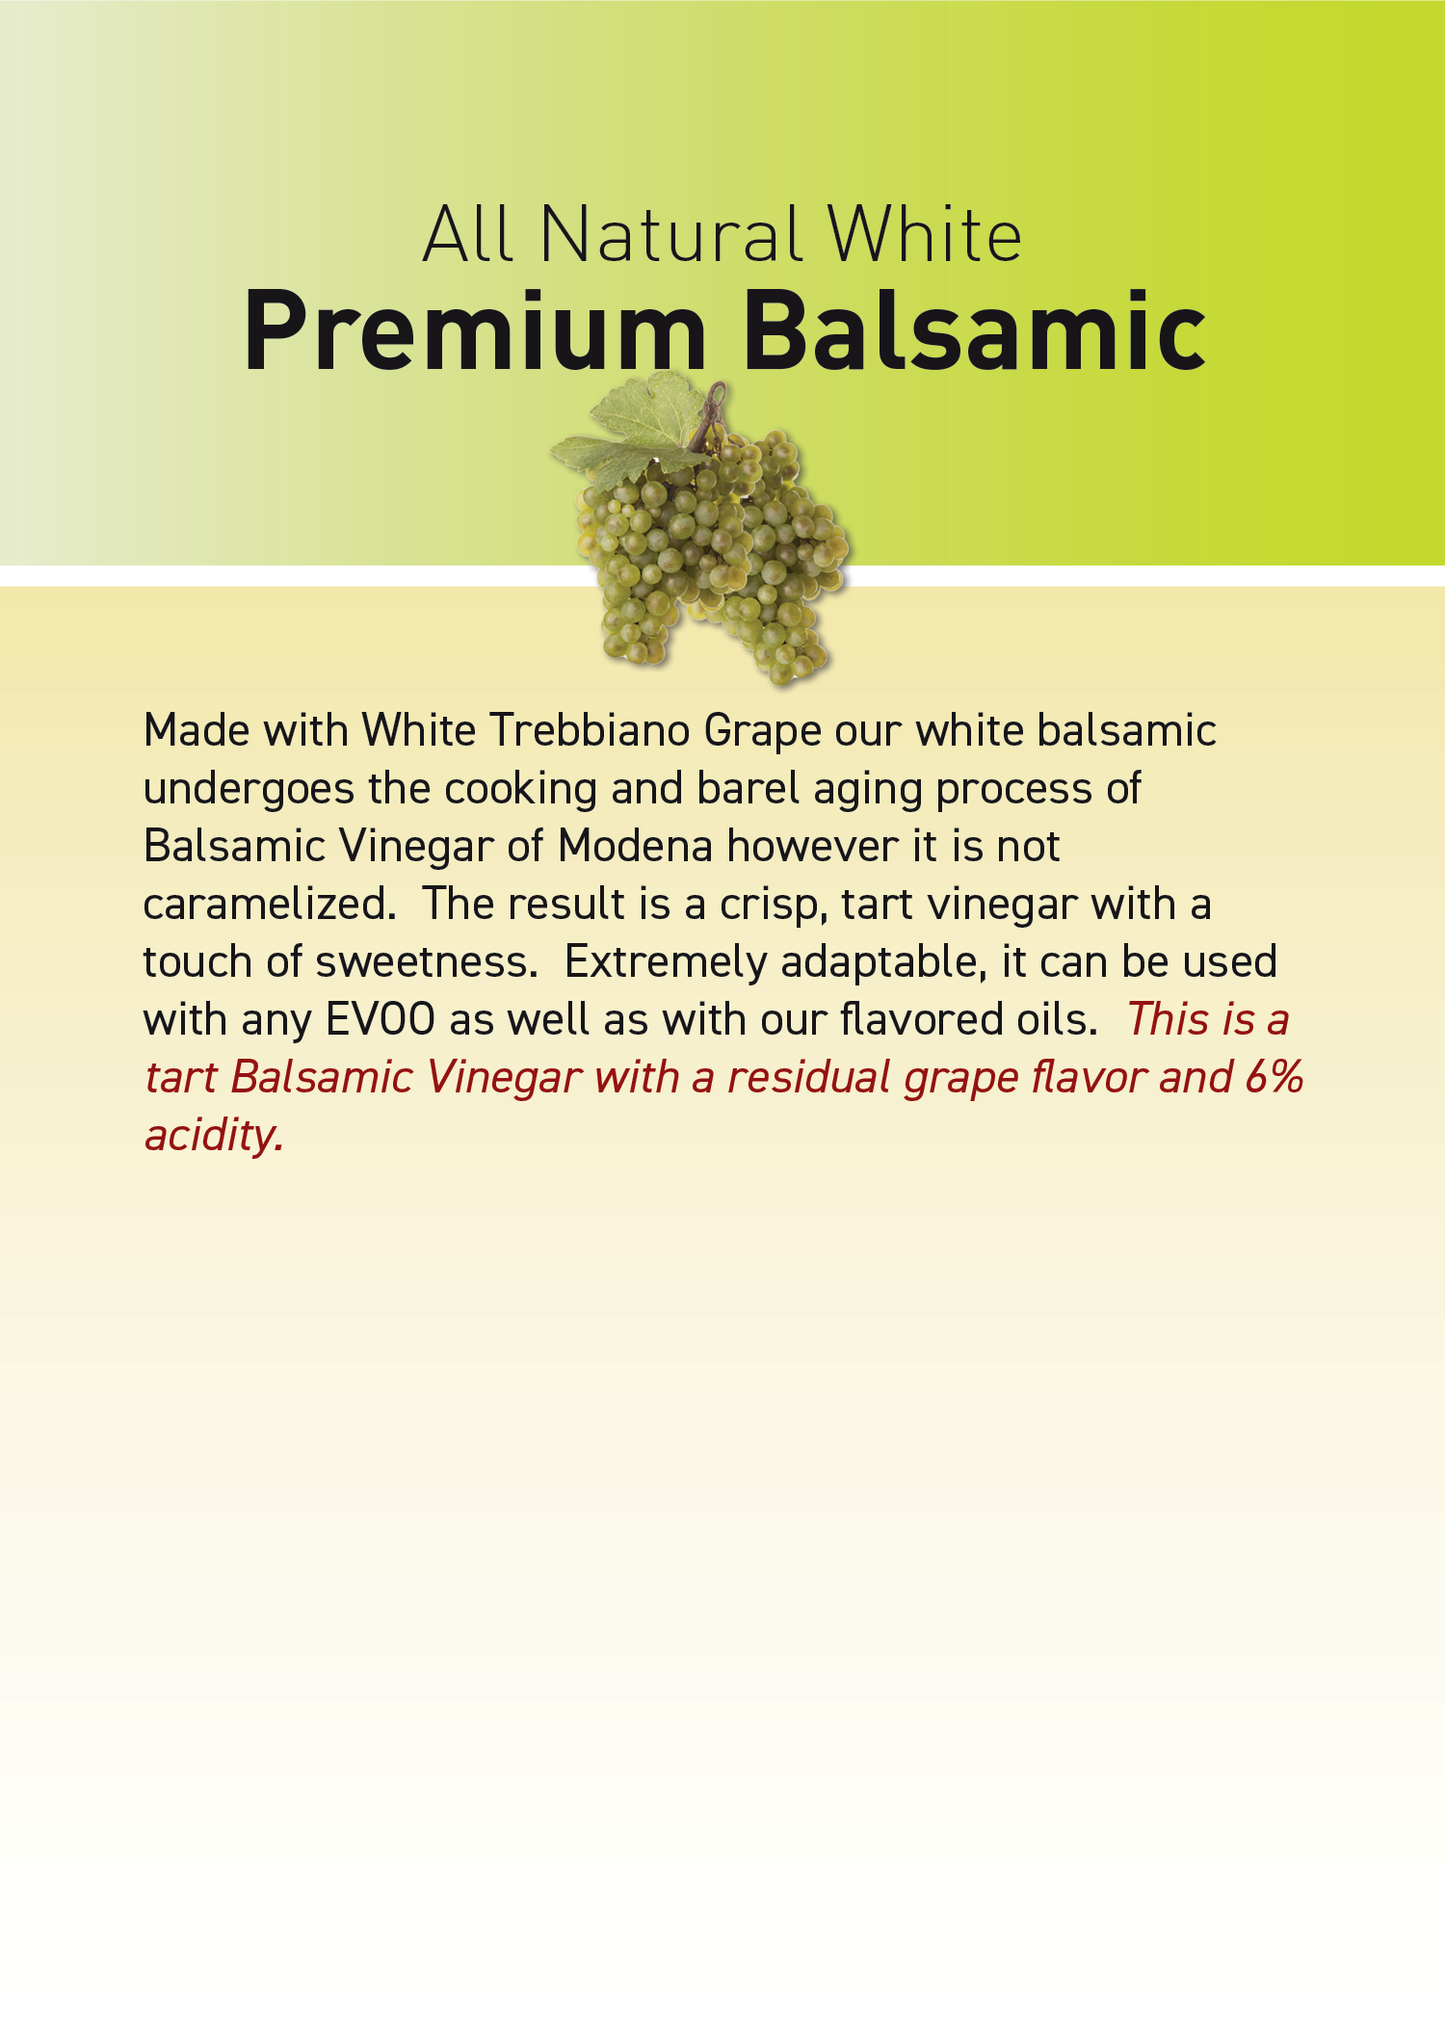 A Premium White Balsamic